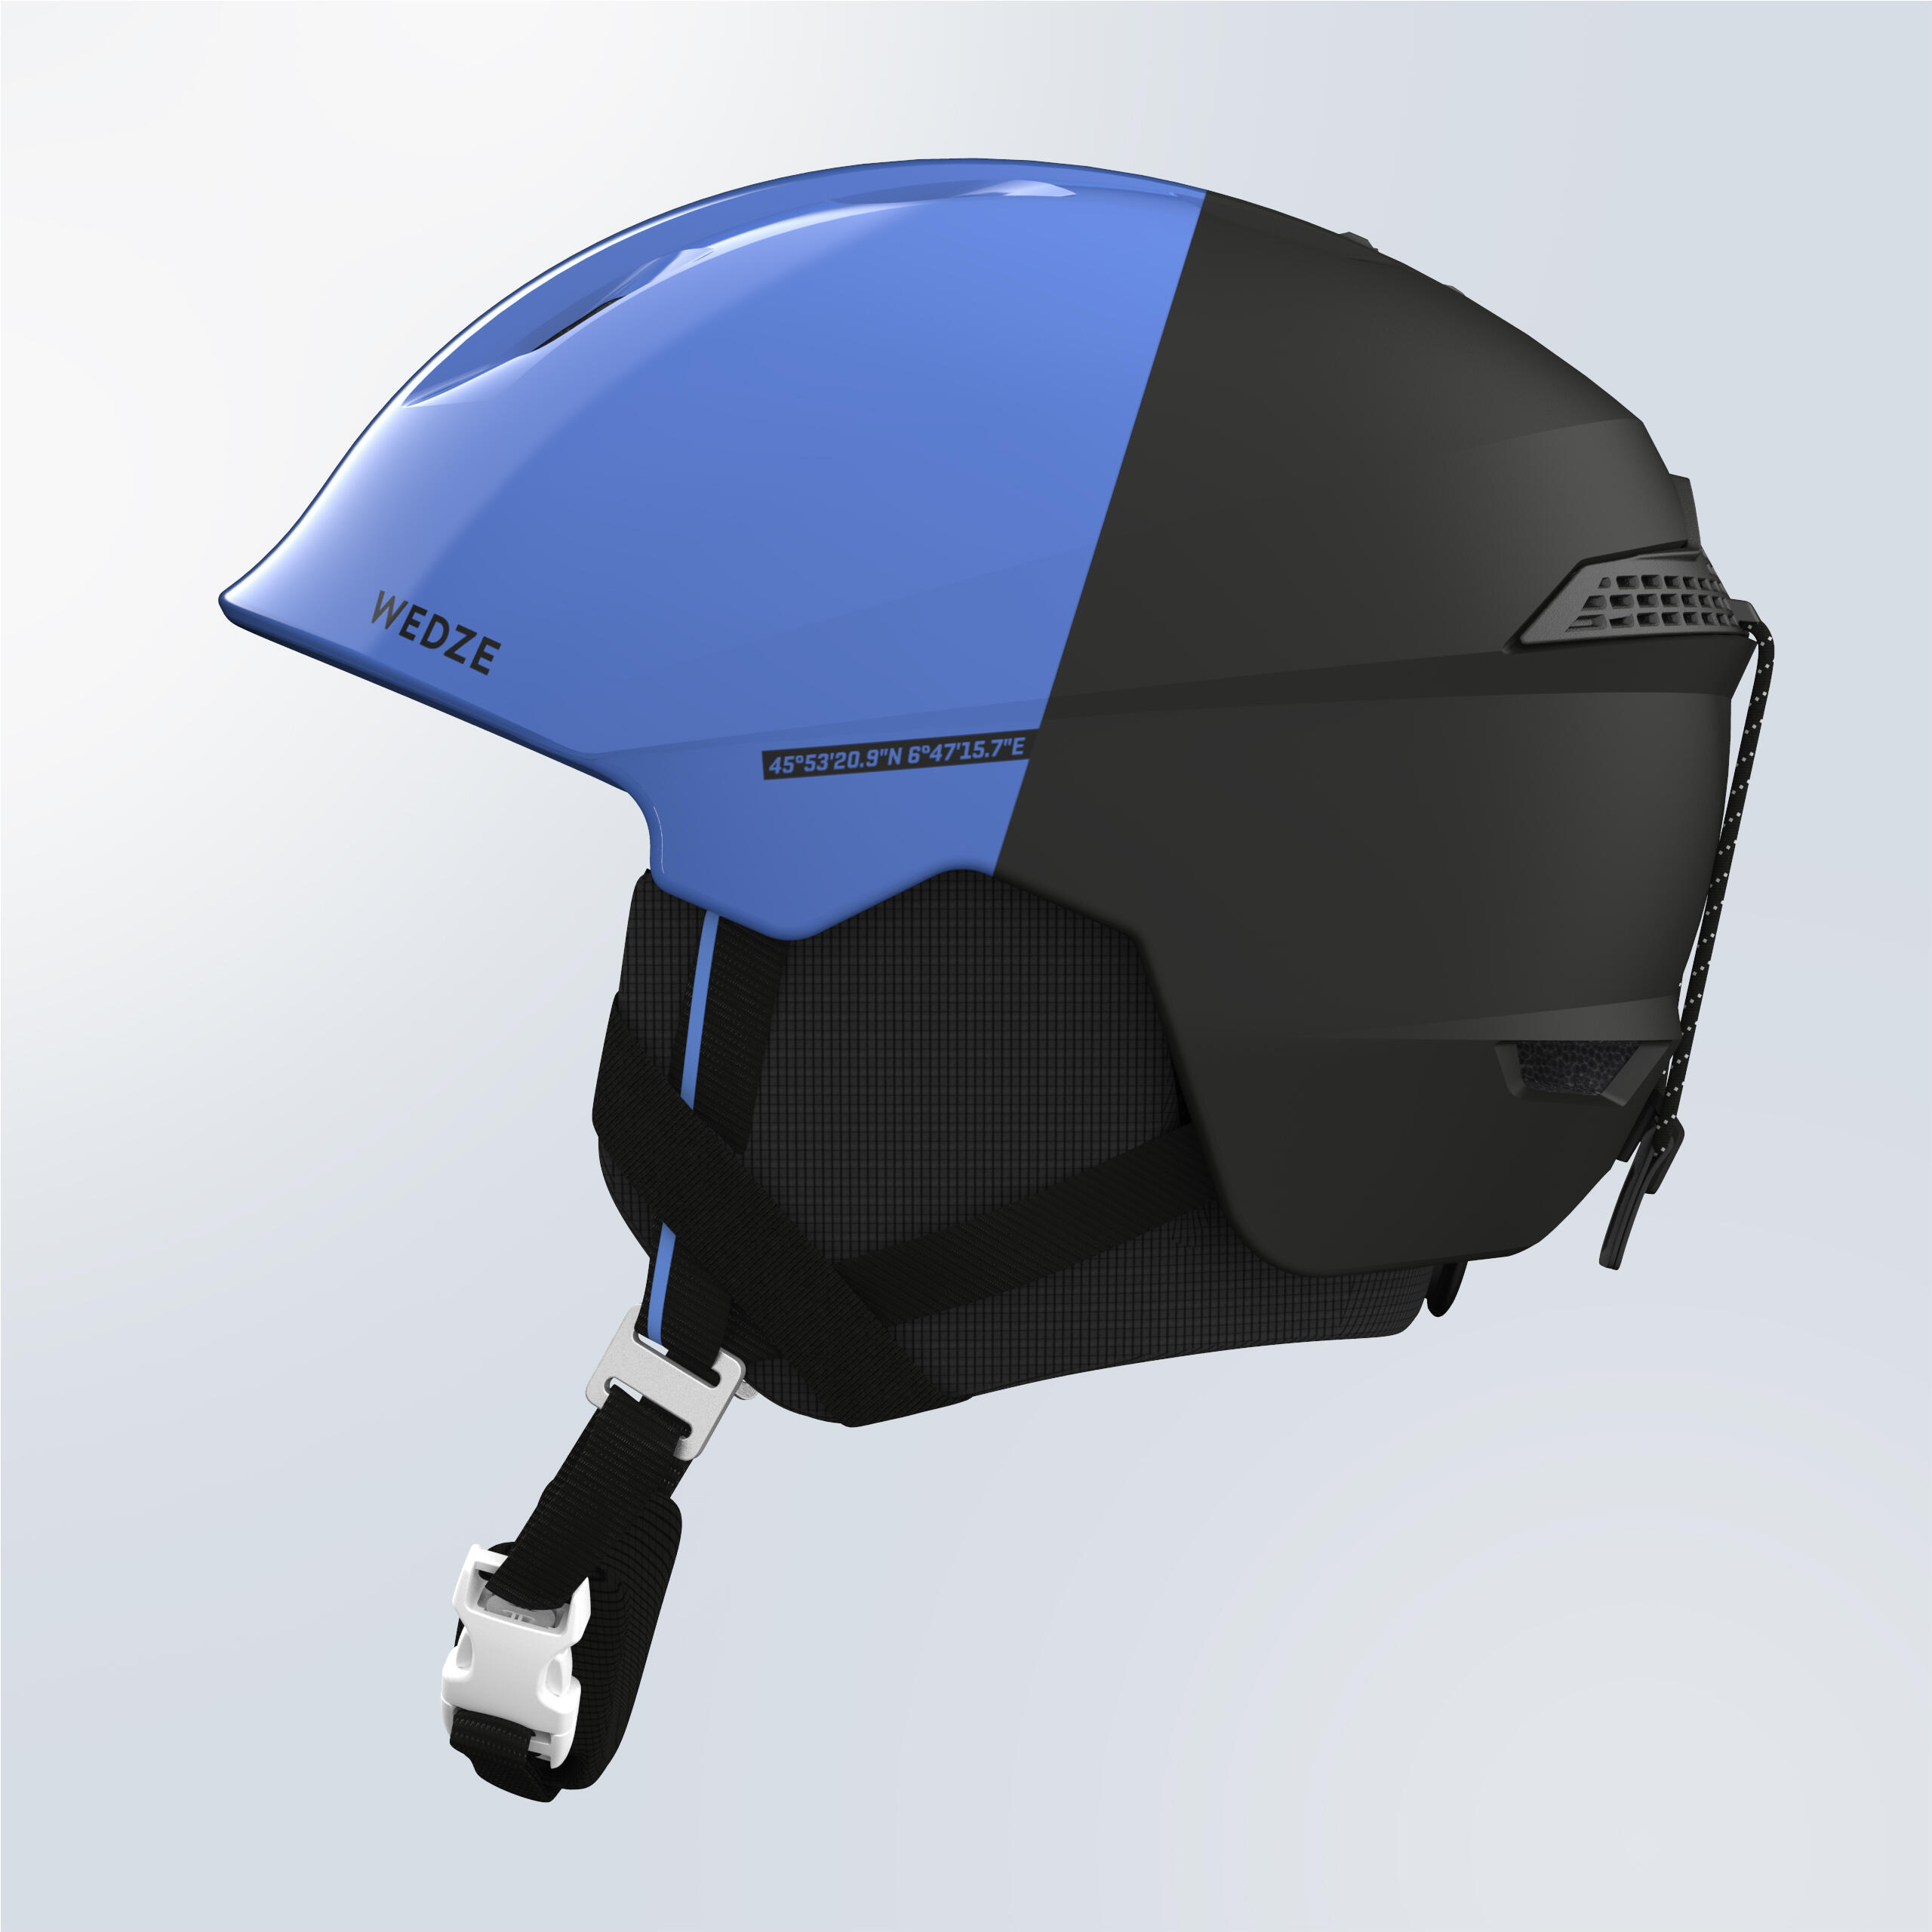 Adult ski helmet - PST 580 - Blue and black 3/7